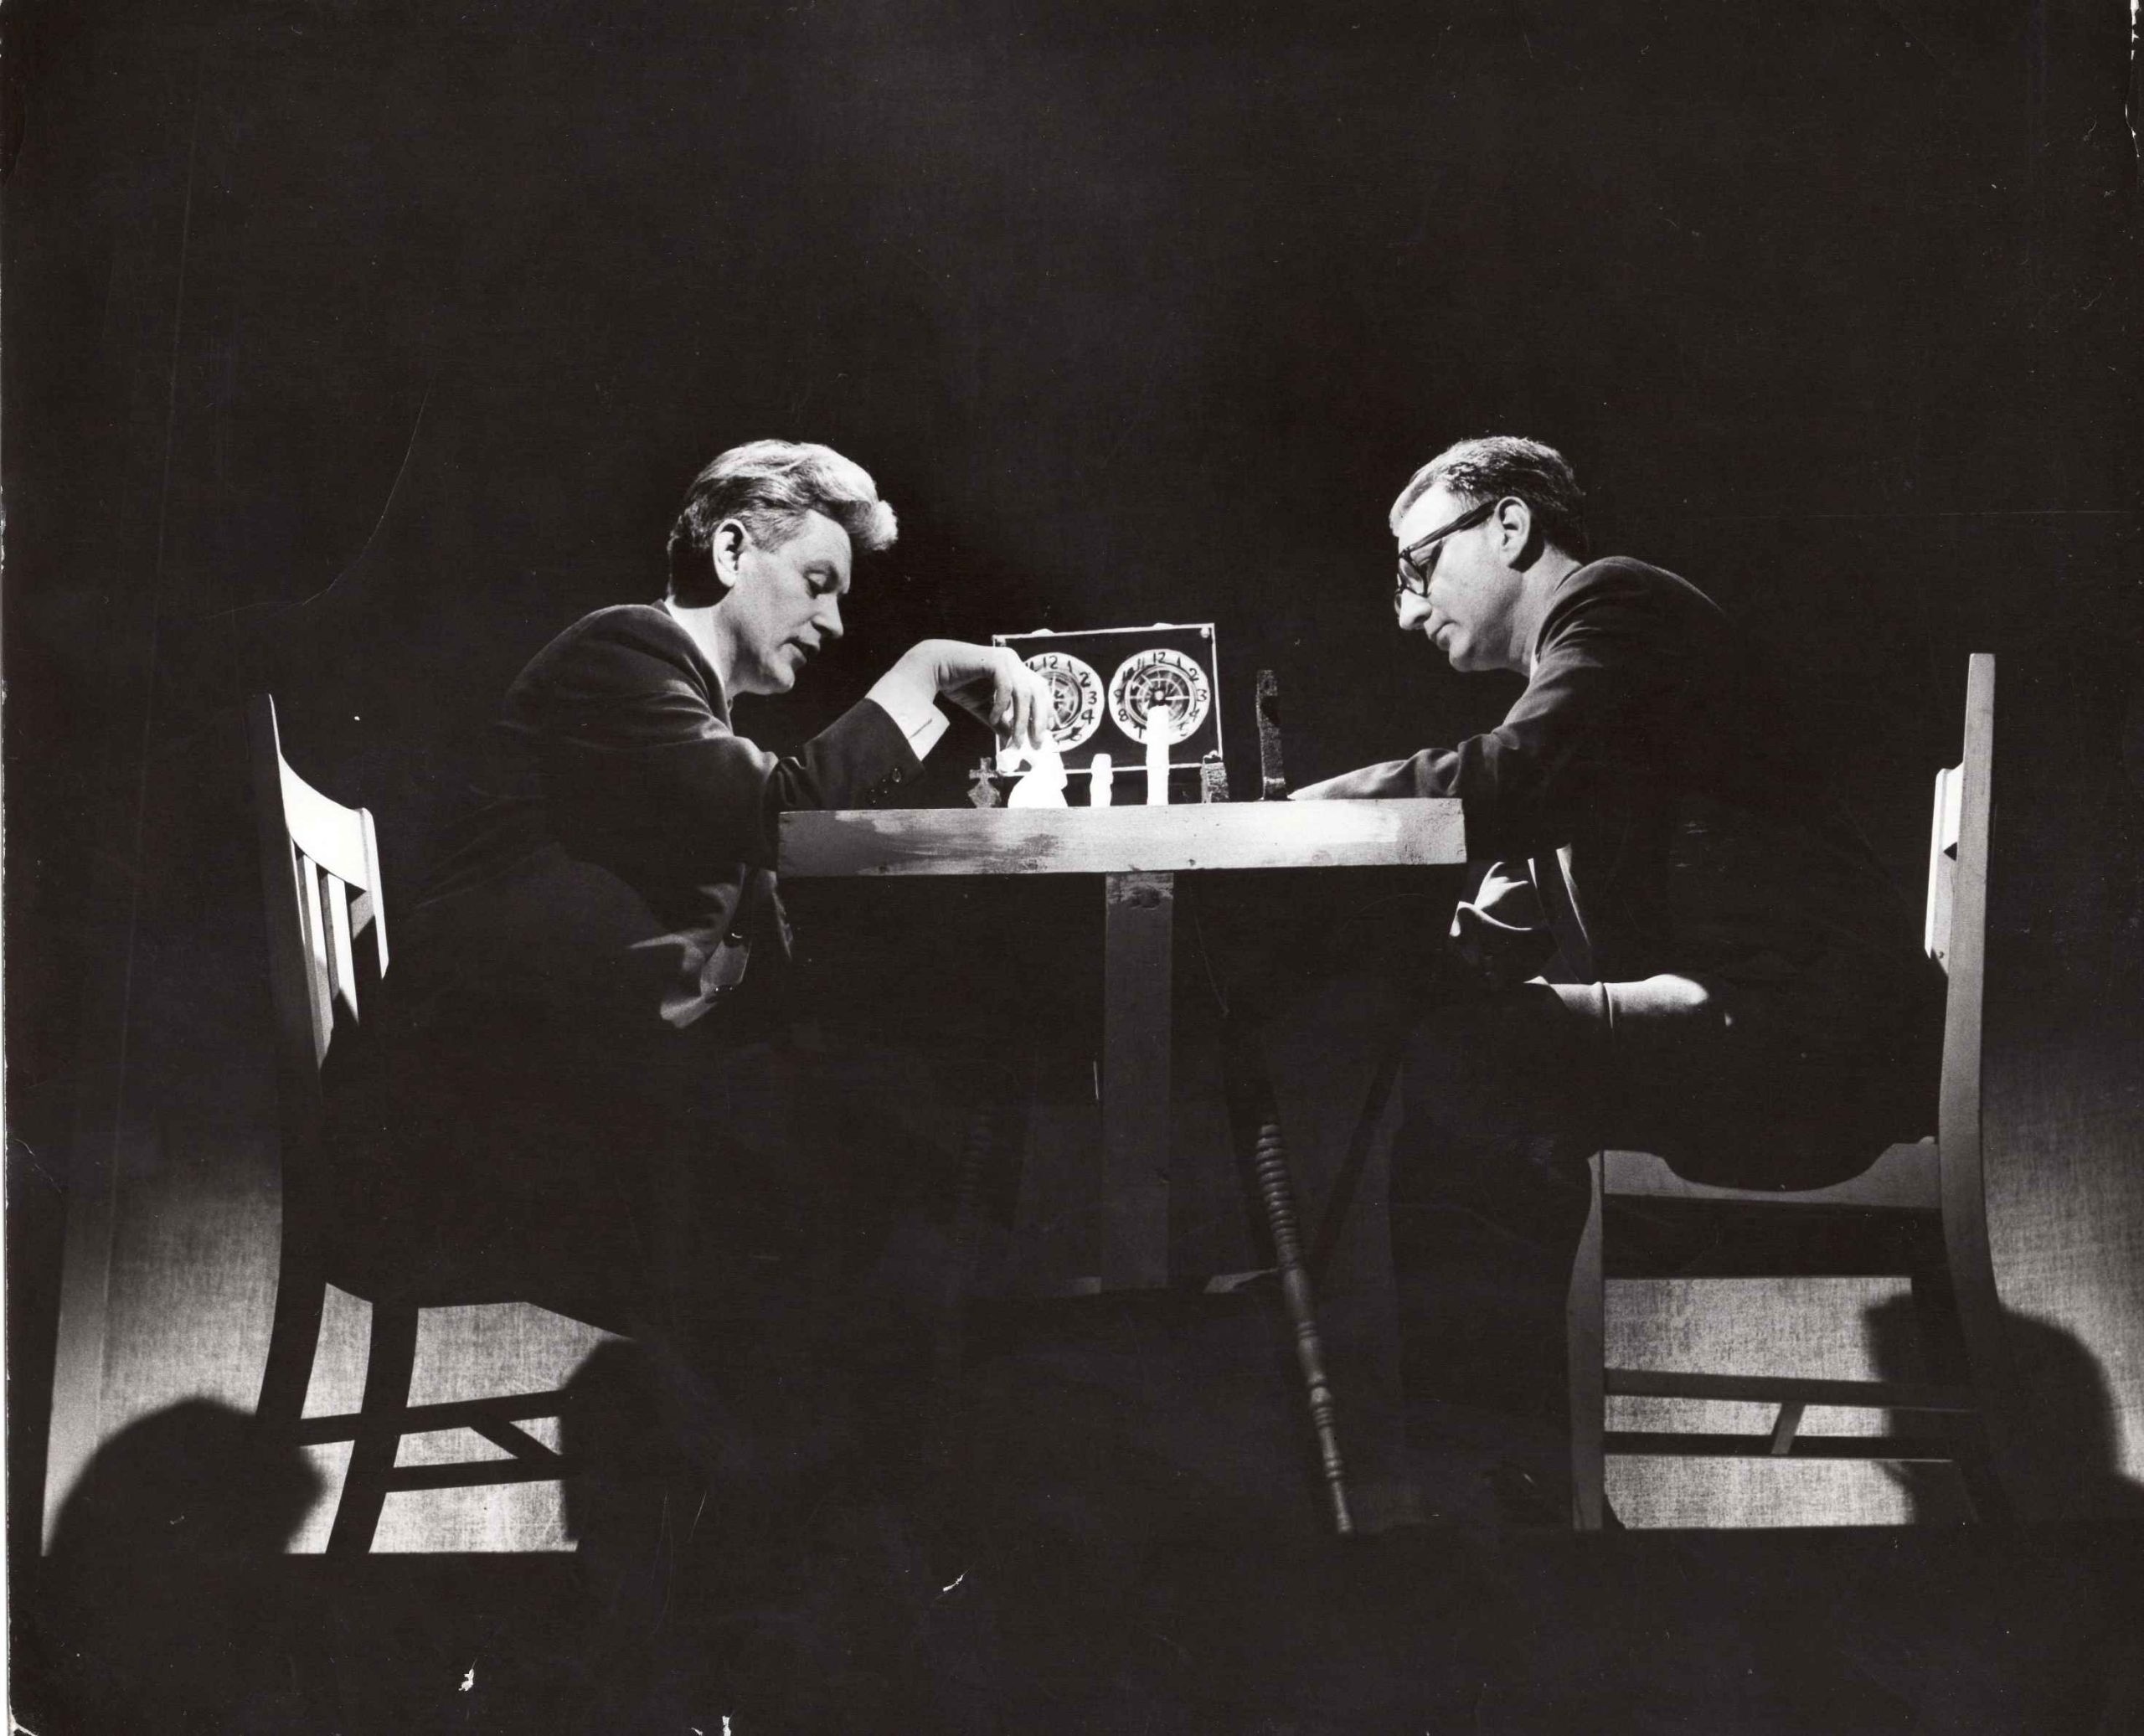 Akimirka prieš K. Ostrausko pjesės „Duobkasiai“ premjerą Čikagos lietuvių teatre. Pjesės autorius (kairėje) ir režisierius J. Blekaitis žaidžia šachmatais. Čikaga, 1966 m. A. Kezio nuotrauka